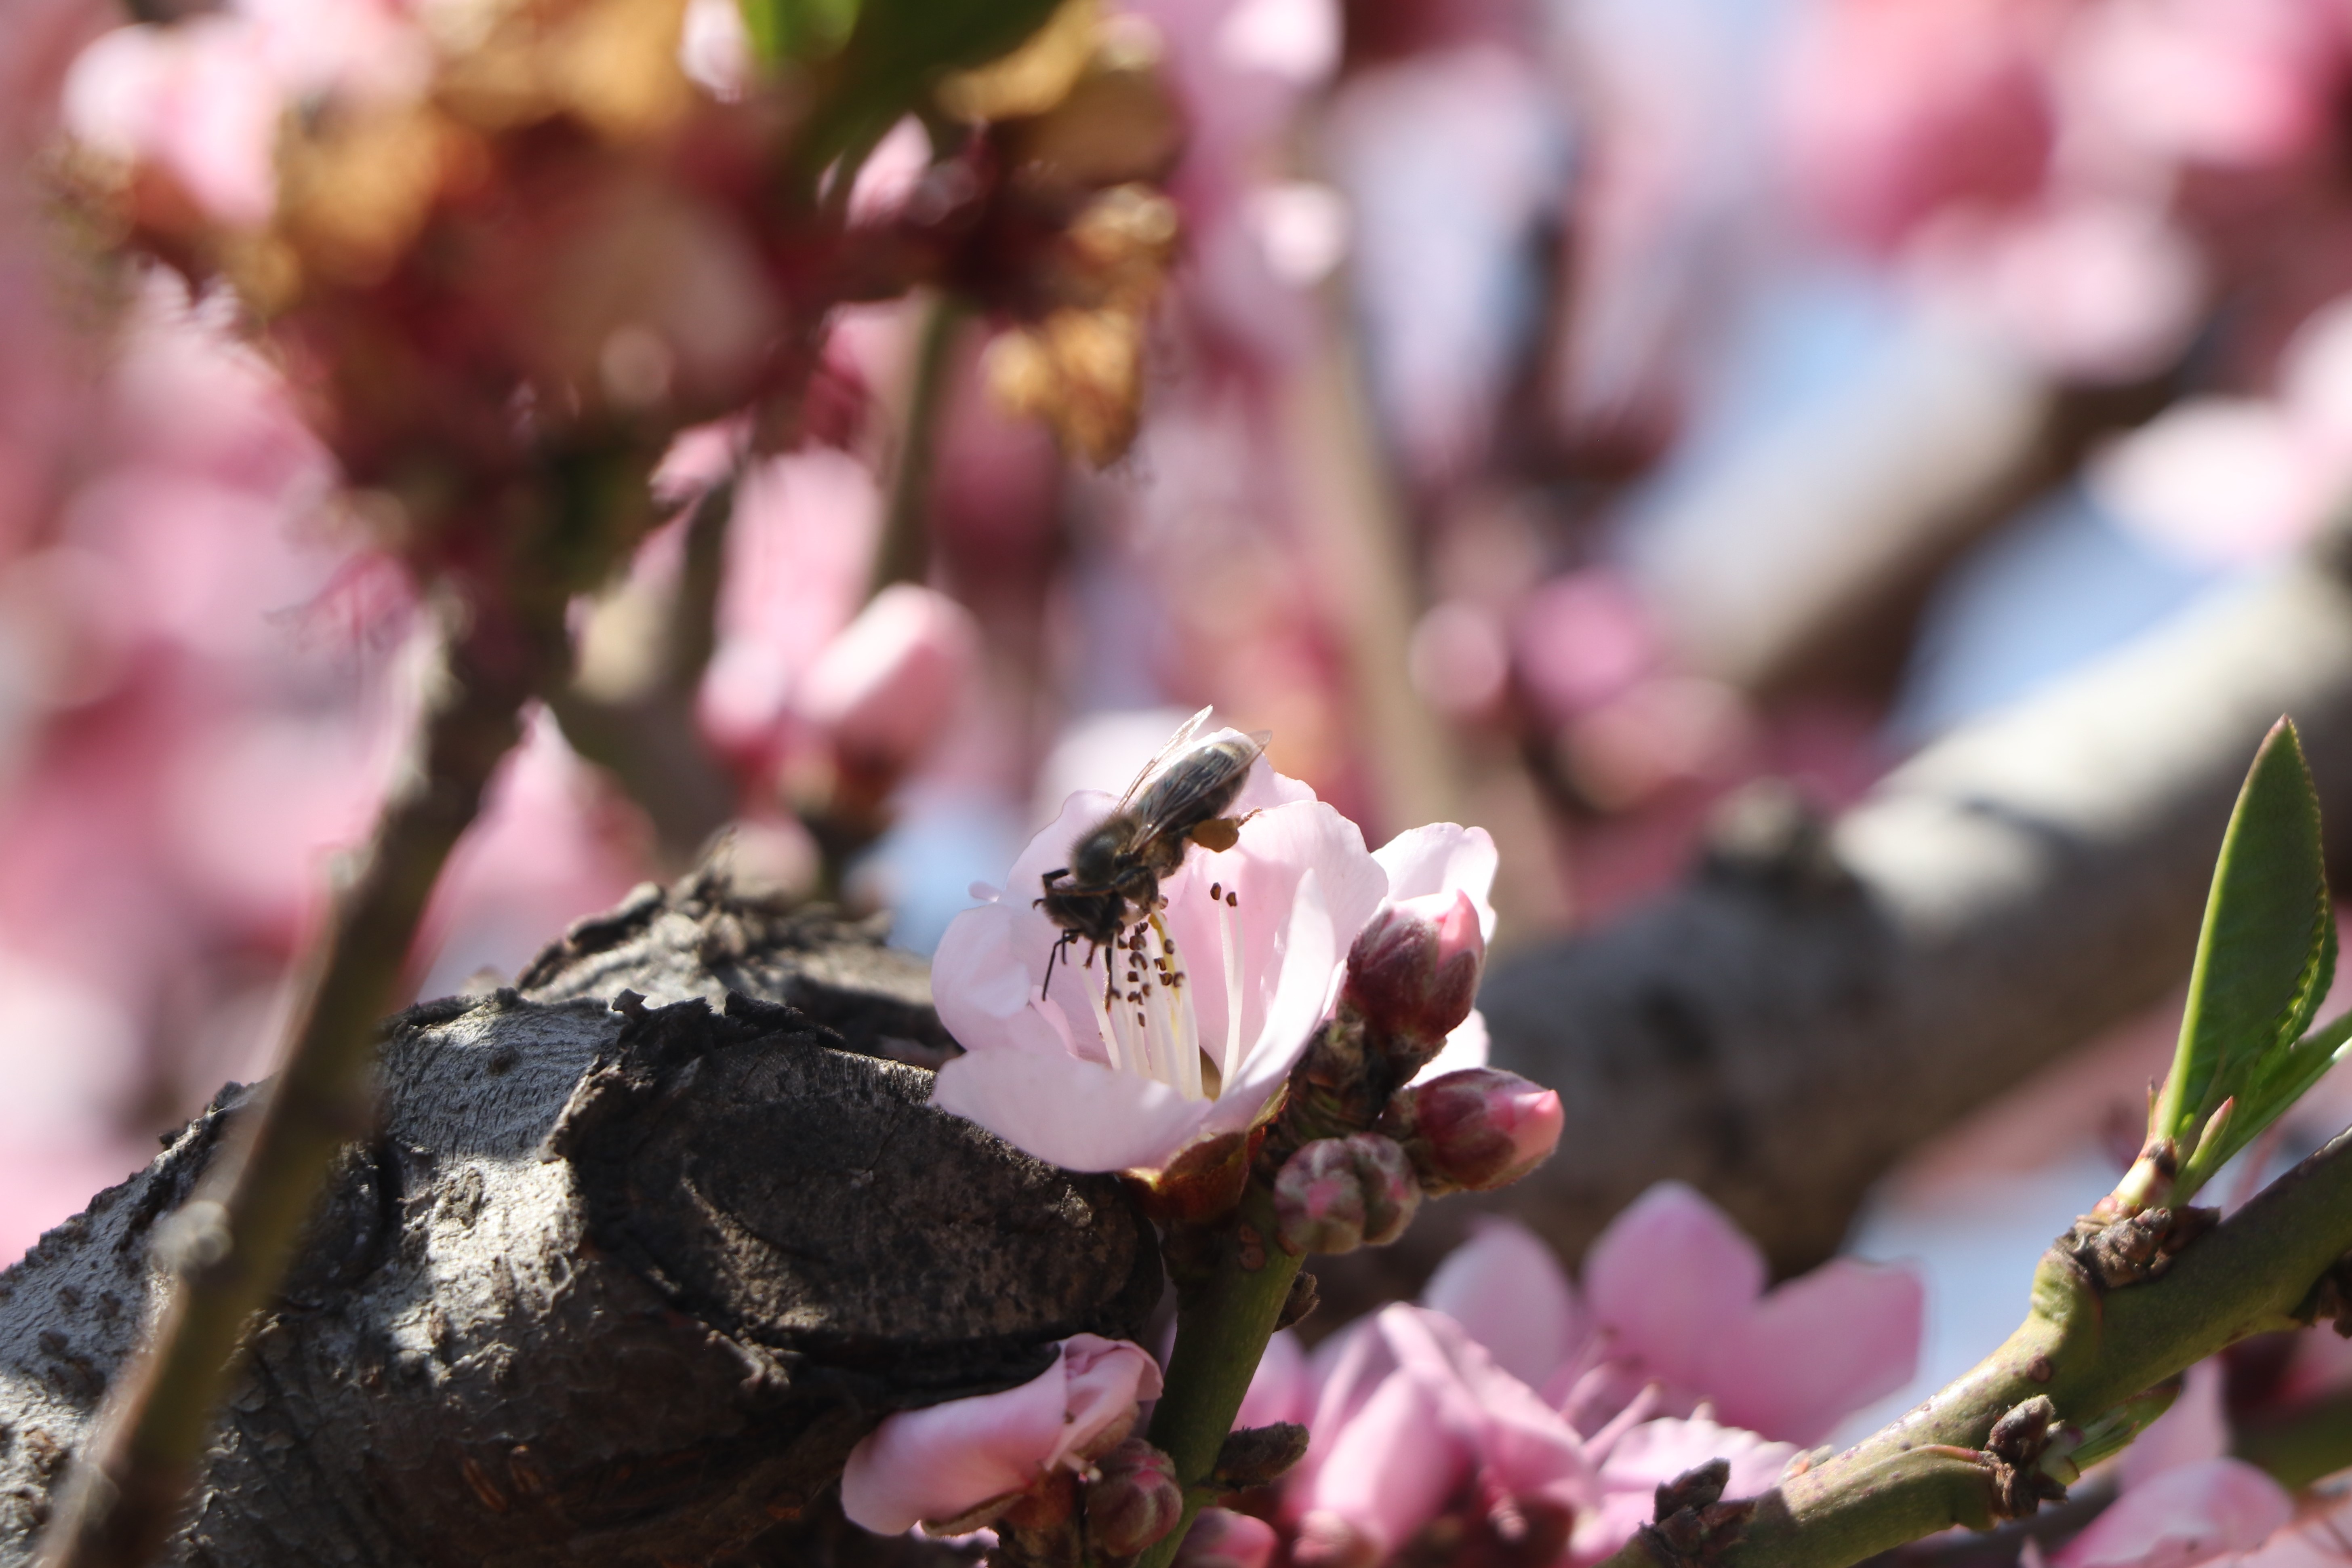 Las abejas juegan un papel importante en la polinización de la flor para que se produzca el melocotón. (Foto Prensa Libre: Raúl Juárez)